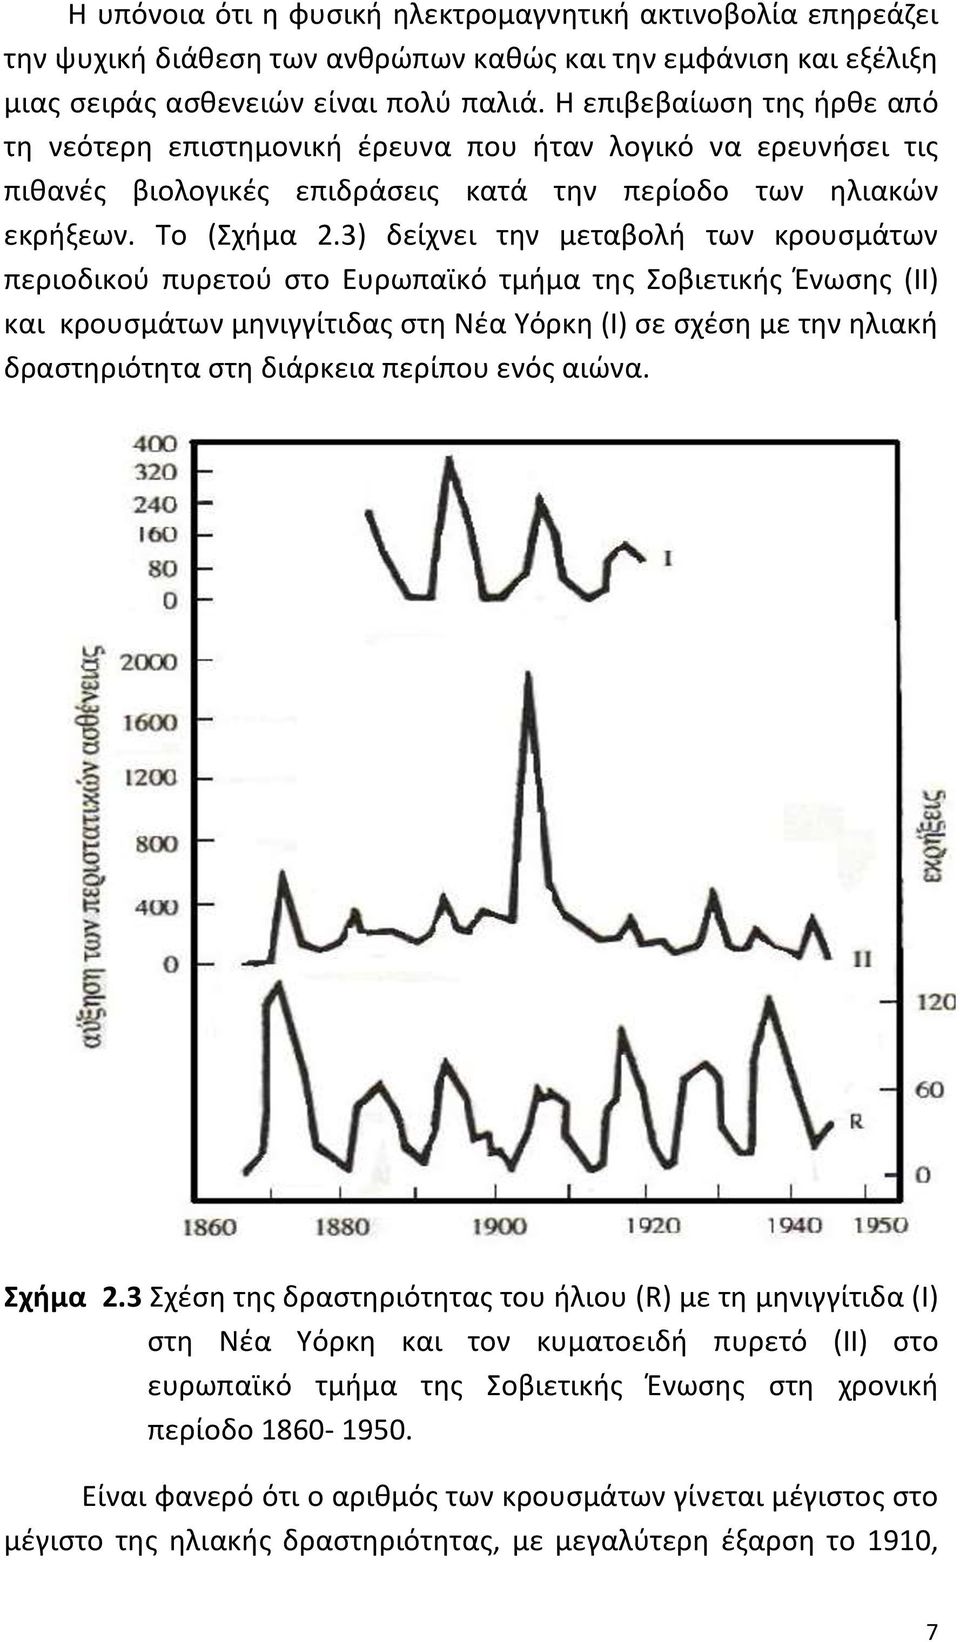 3) δείχνει την μεταβολή των κρουσμάτων περιοδικού πυρετού στο Ευρωπαϊκό τμήμα της Σοβιετικής Ένωσης (ΙΙ) και κρουσμάτων μηνιγγίτιδας στη Νέα Υόρκη (Ι) σε σχέση με την ηλιακή δραστηριότητα στη